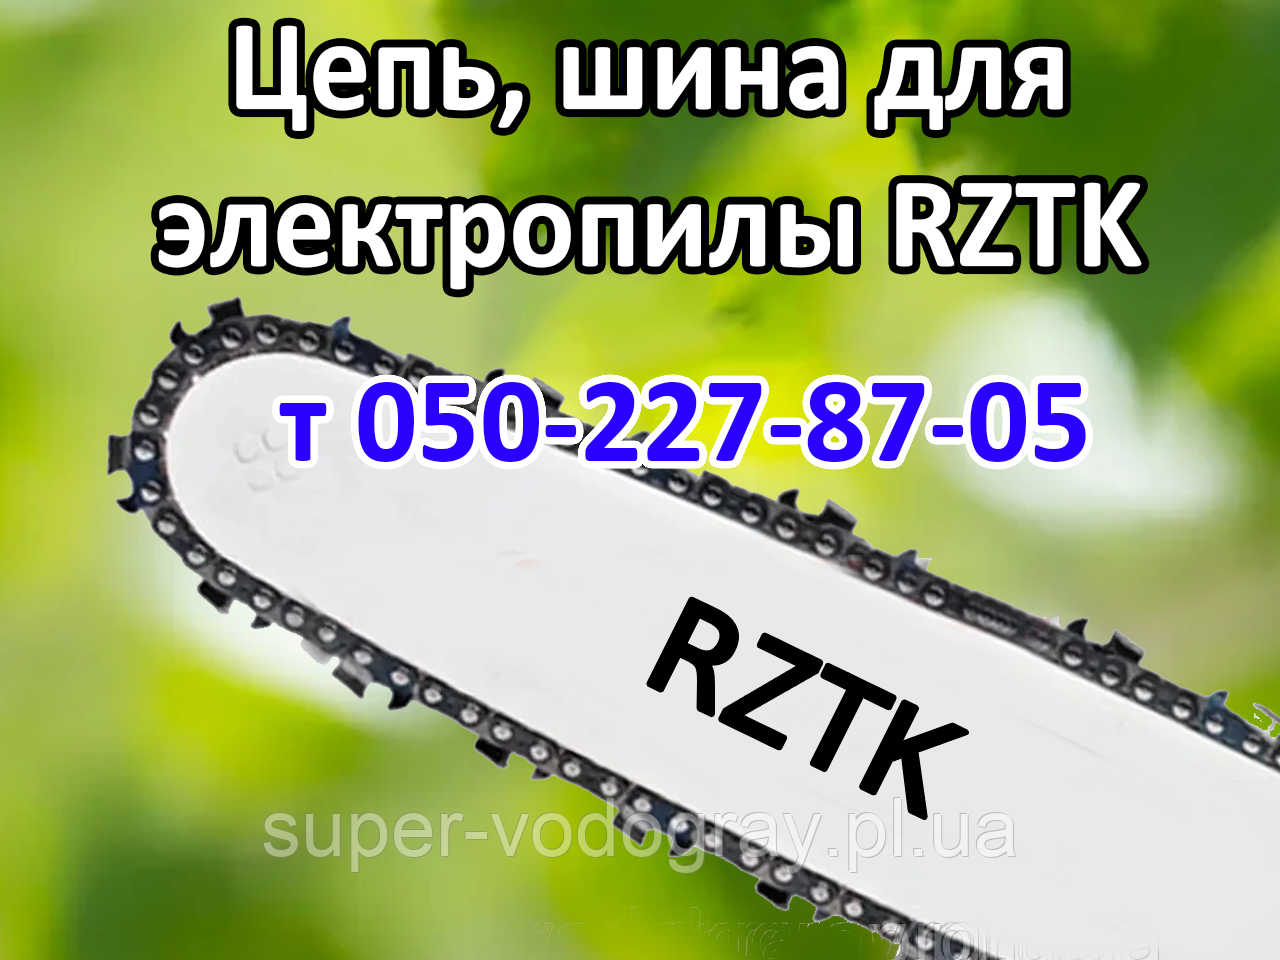 Ланцюг, шина для електропили RZTK